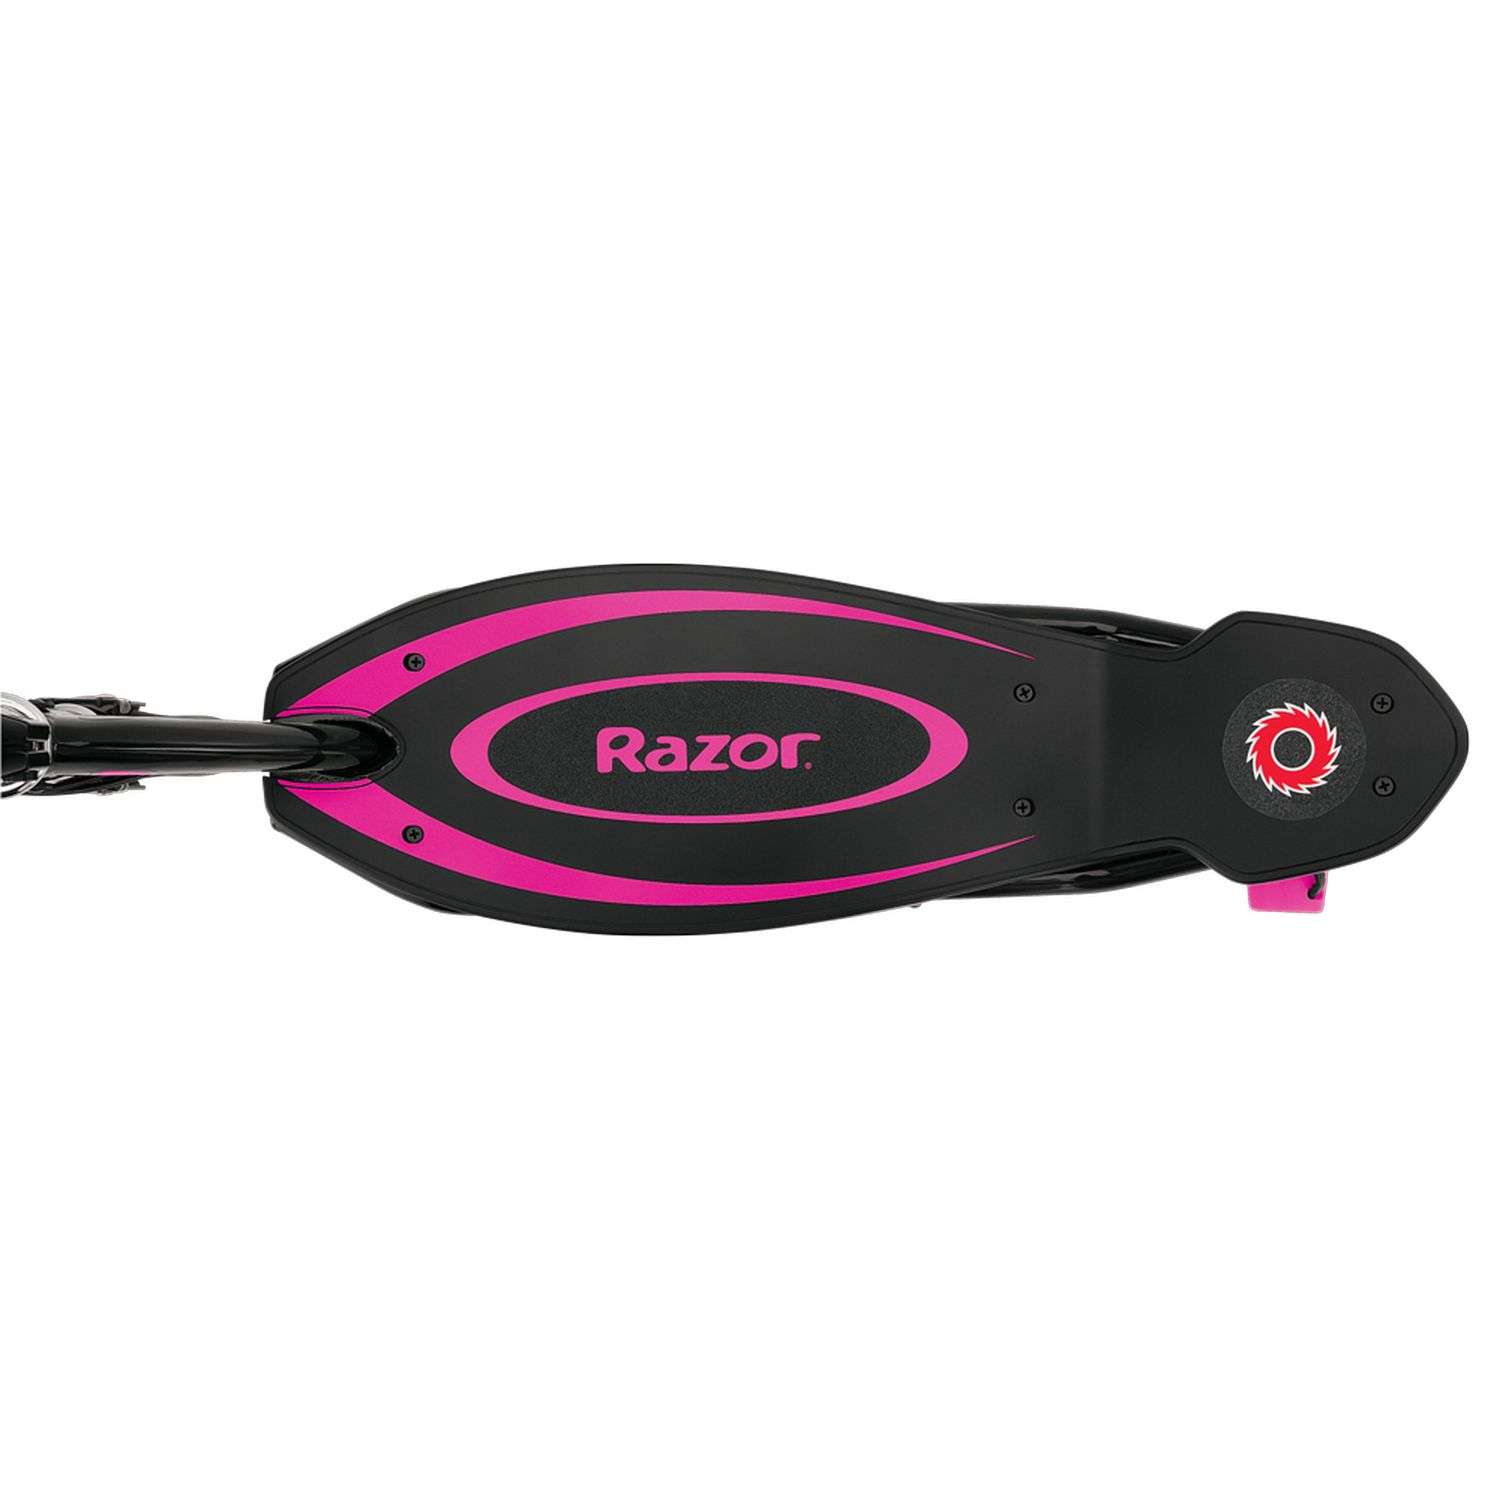 Электросамокат для детей RAZOR Power Core E90 розовый детский электрический с запасом хода до 90 минут - фото 9